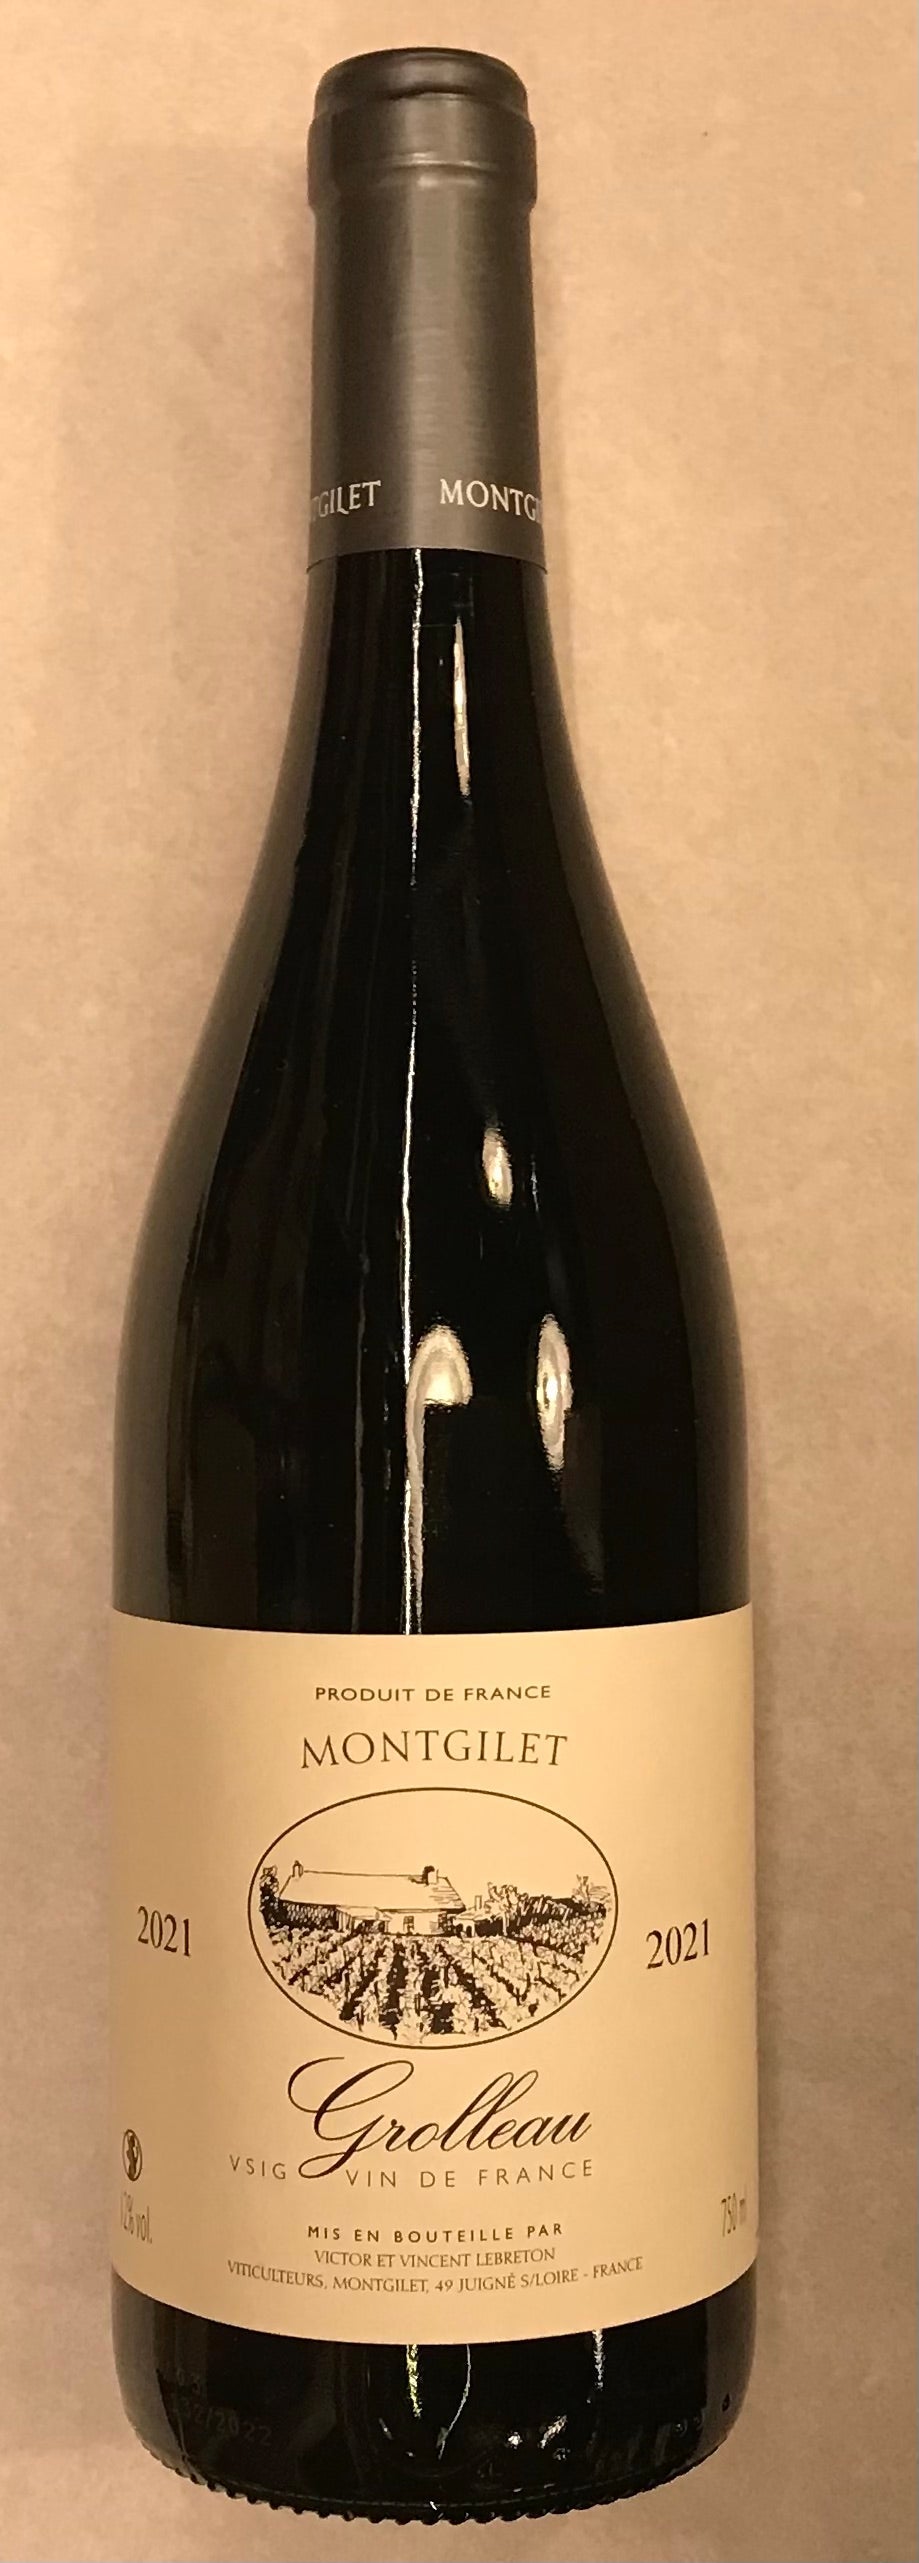 Vin de France - Grolleau - 2021 - Domaine De Montgilet